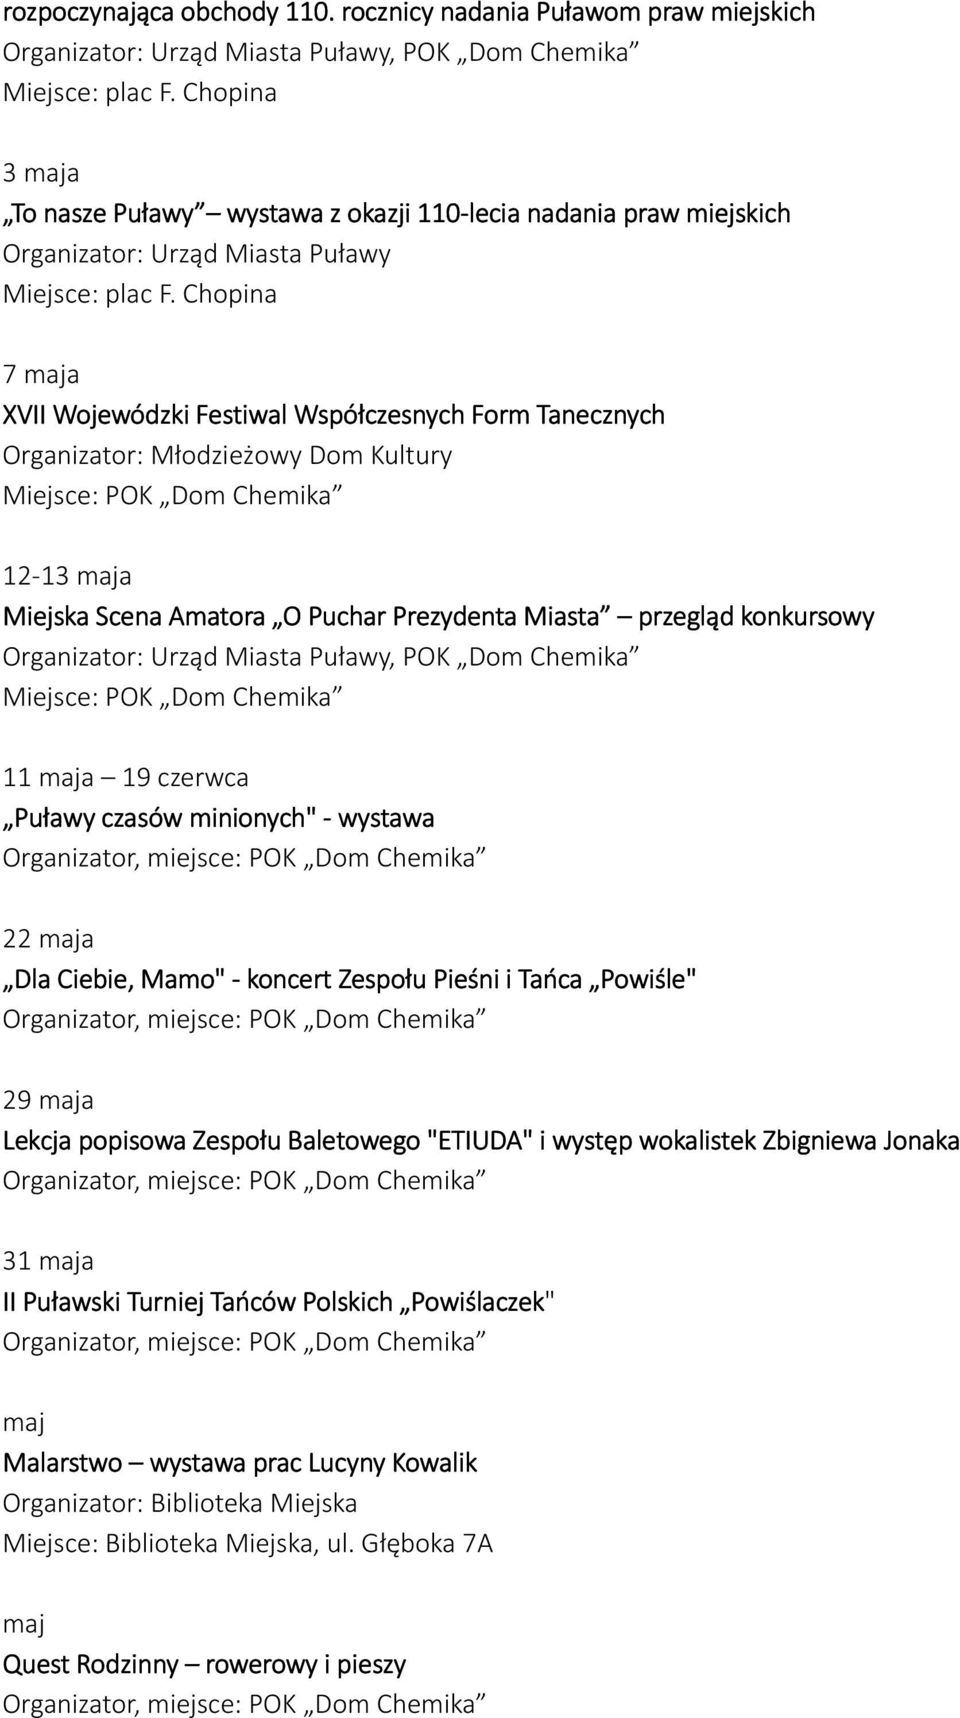 Chopina 7 maja XVII Wojewódzki Festiwal Współczesnych Form Tanecznych Organizator: Młodzieżowy Dom Kultury 12-13 maja Miejska Scena Amatora O Puchar Prezydenta Miasta przegląd konkursowy Organizator: